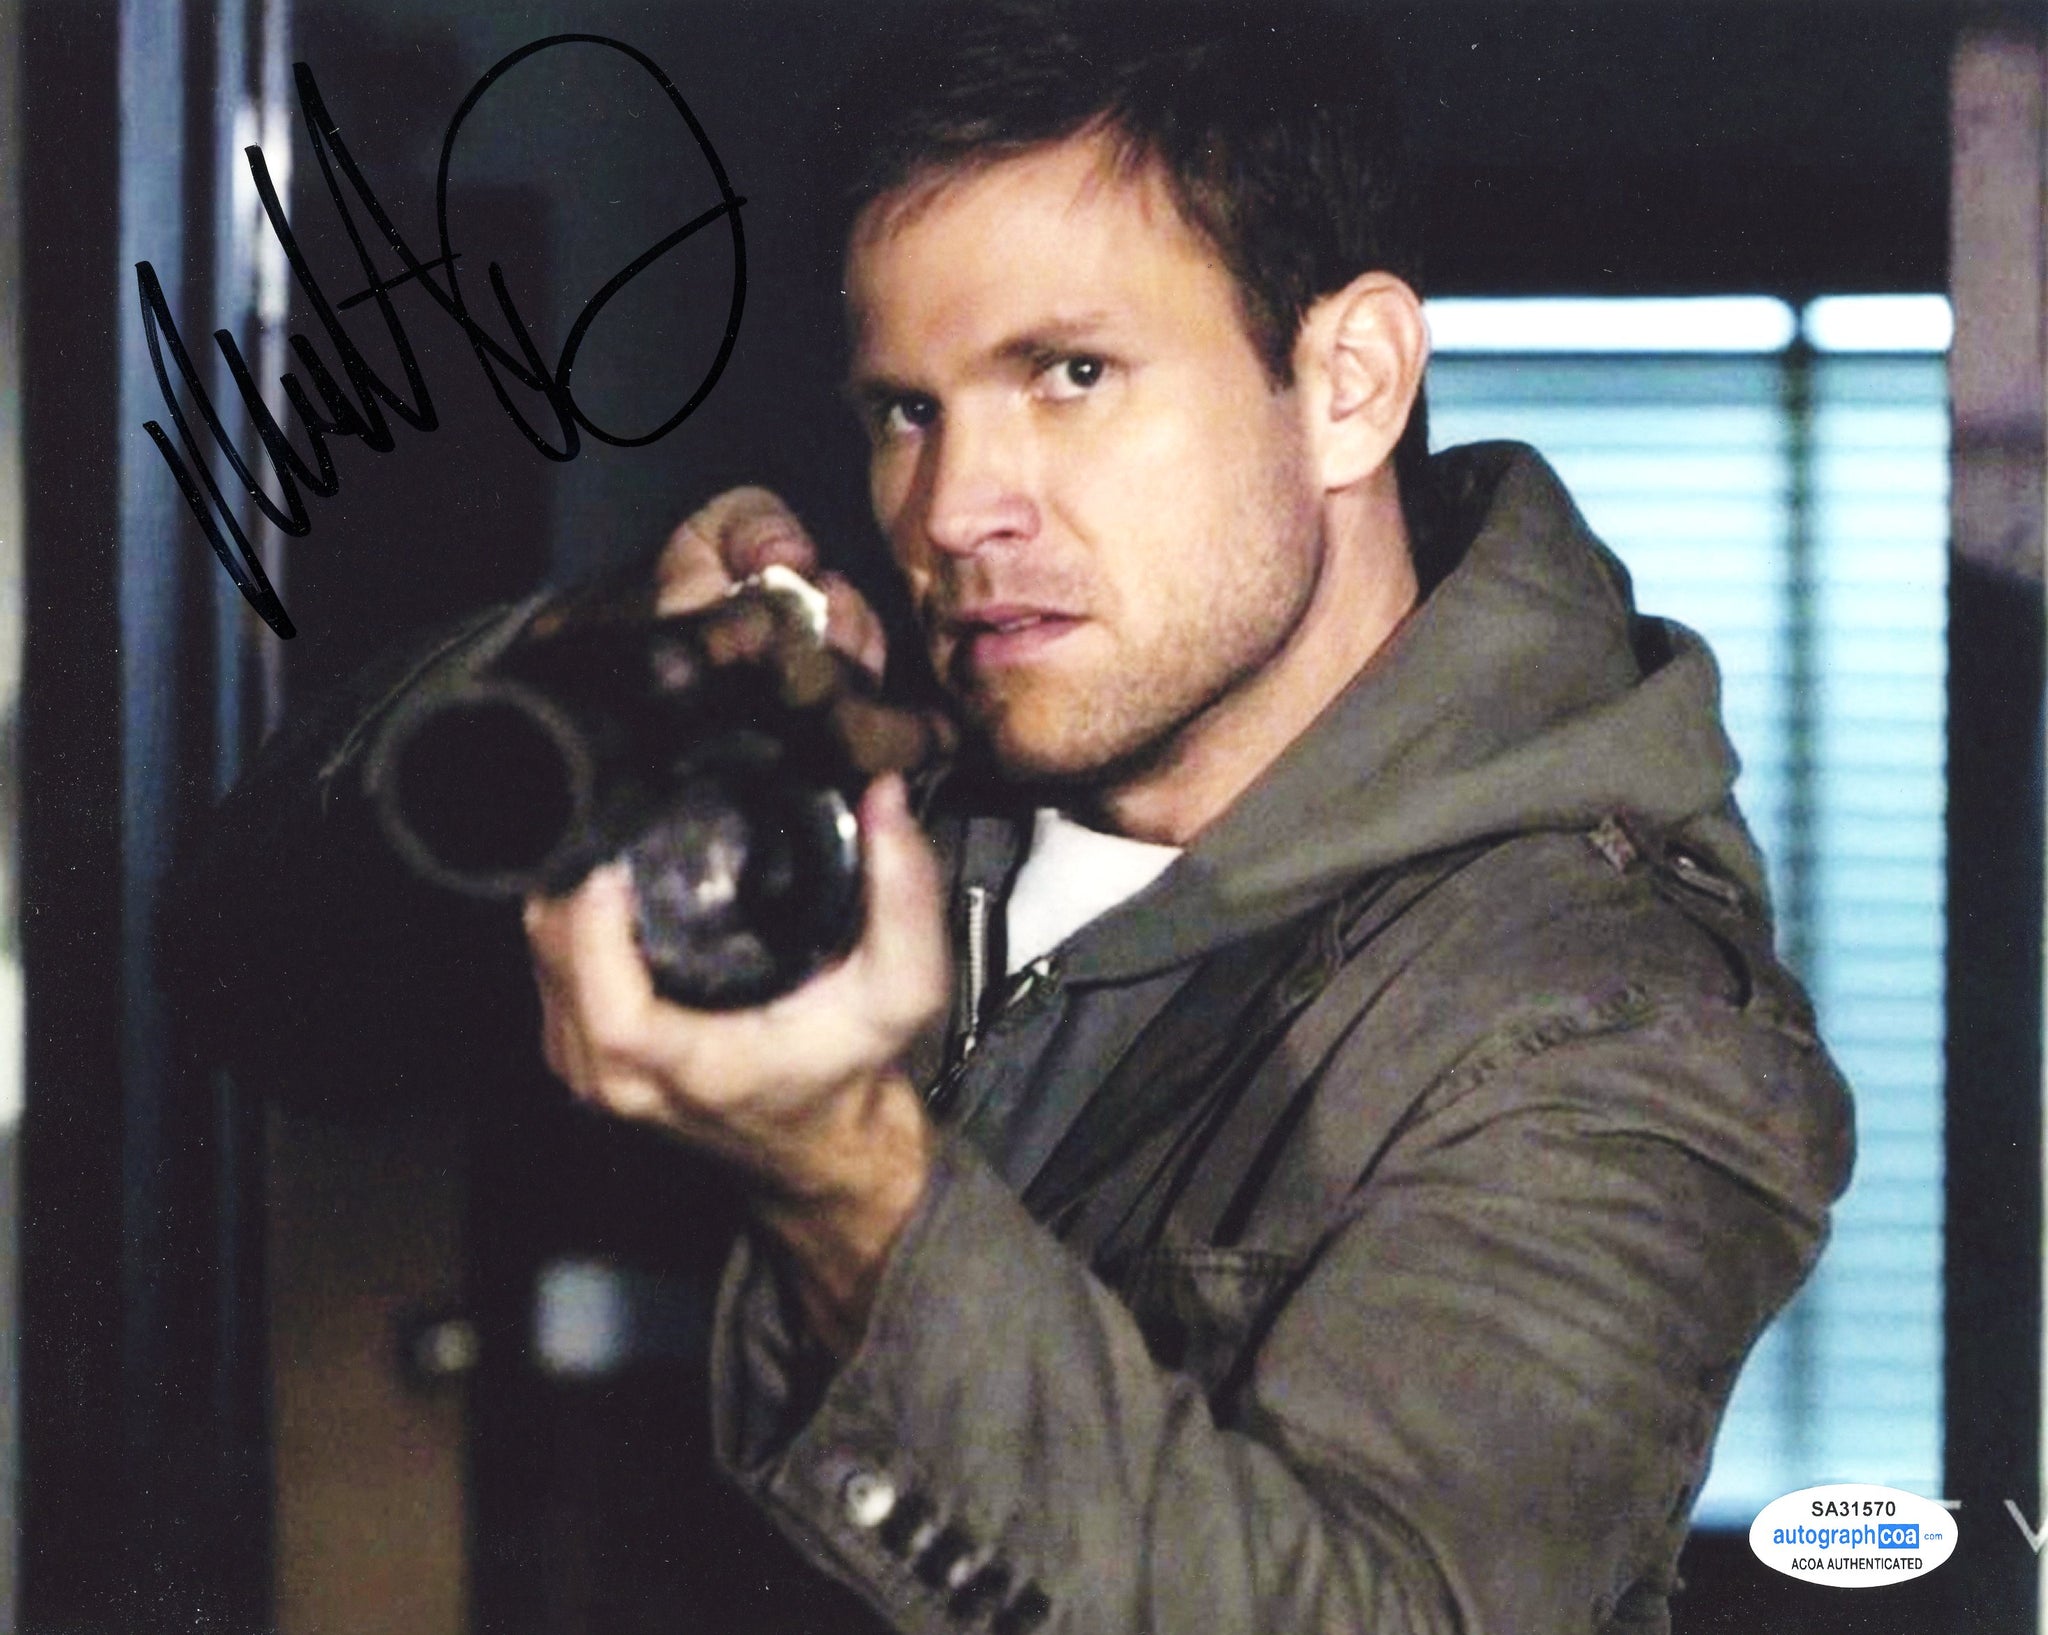 Matt Davis Vampire Diaries Signed Autograph 8x10 Photo ACOA #3 - Outlaw Hobbies Authentic Autographs